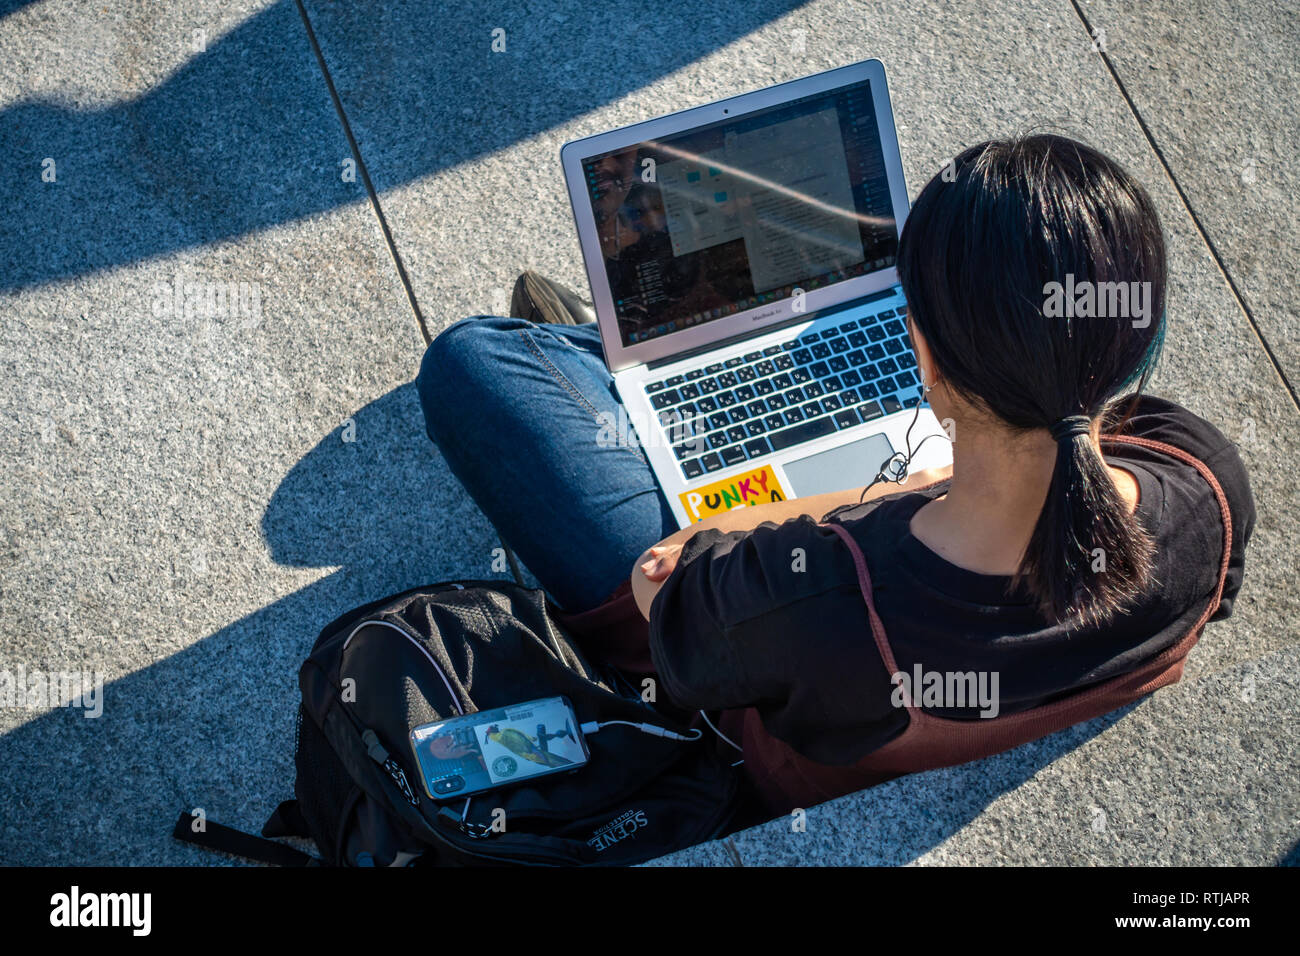 Bild von oben der jungen Dame sitzen draußen in der Sonne und mit Ihrem Laptop und Handy an Kohle Tropfen Yard, Kings Cross, London, England Stockfoto